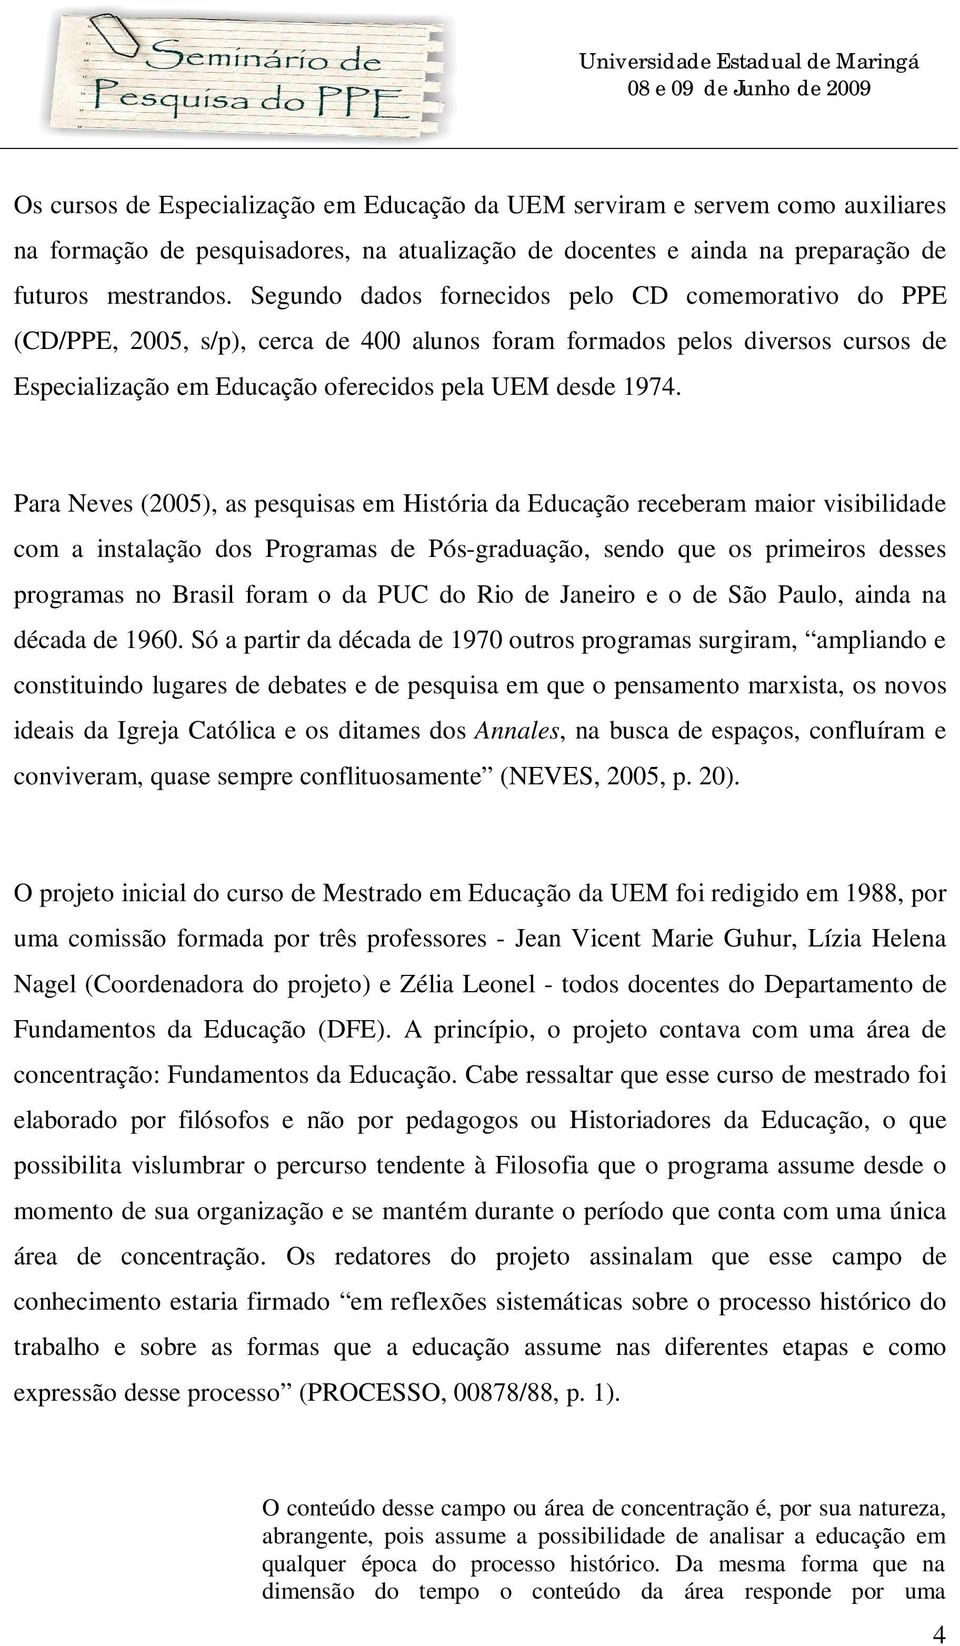 Para Neves (2005), as pesquisas em História da Educação receberam maior visibilidade com a instalação dos Programas de Pós-graduação, sendo que os primeiros desses programas no Brasil foram o da PUC